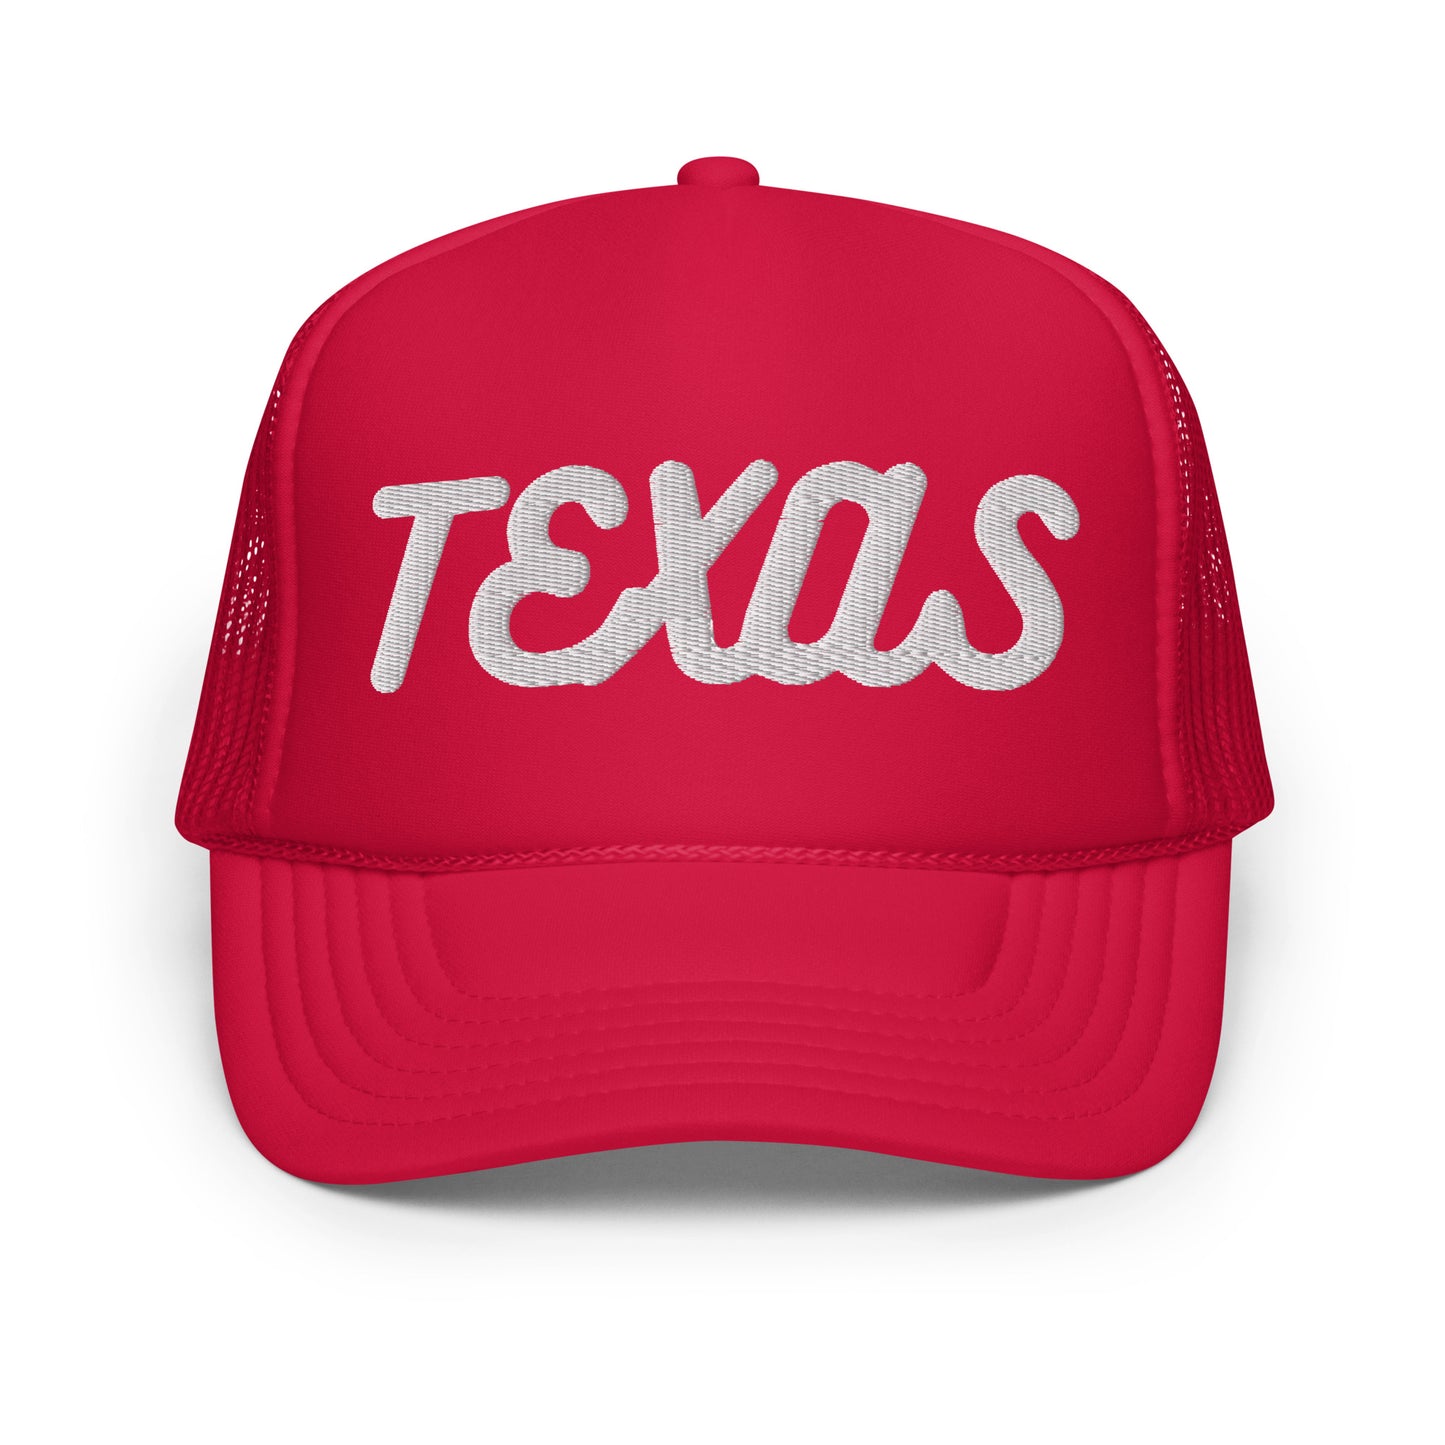 Texas Foam trucker hat